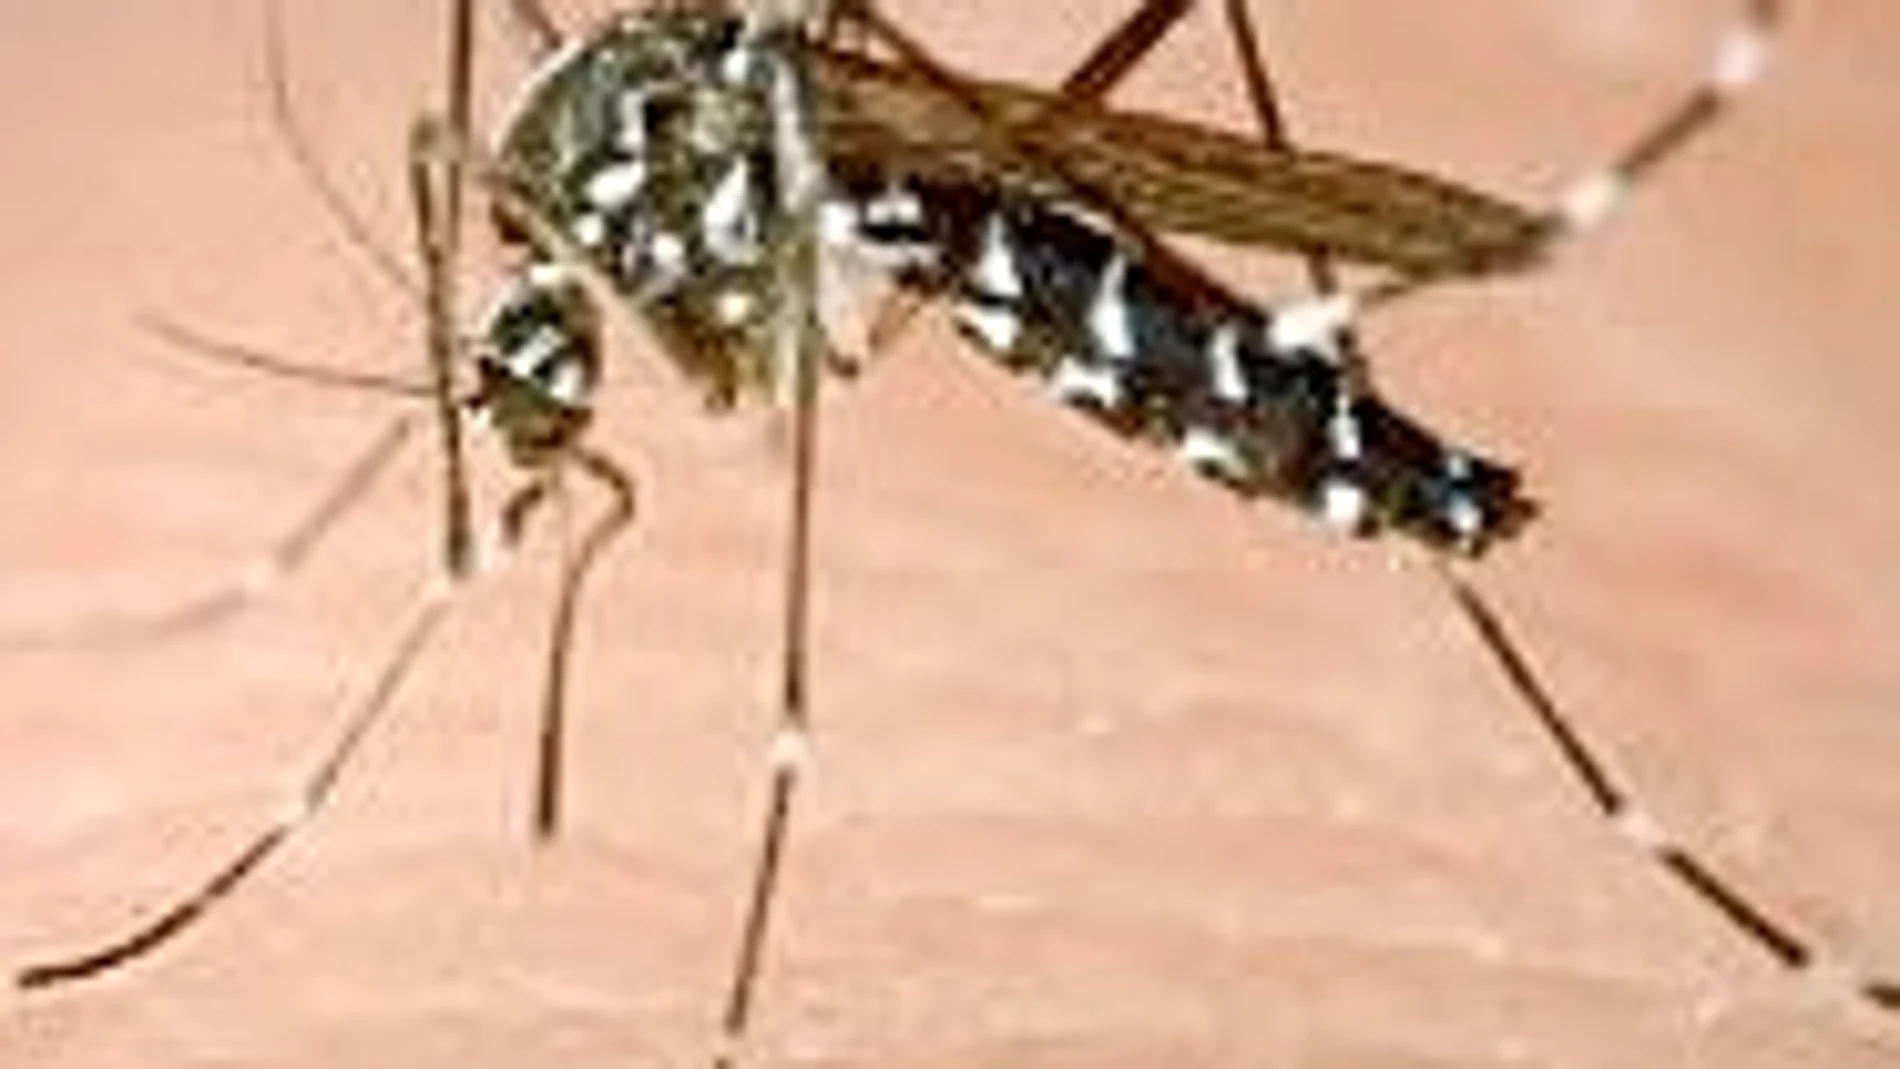 Instalado desde hace tiempo en partes de Cataluña, este tipo de insecto es el transmisor del dengue en la cuenca mediterránea